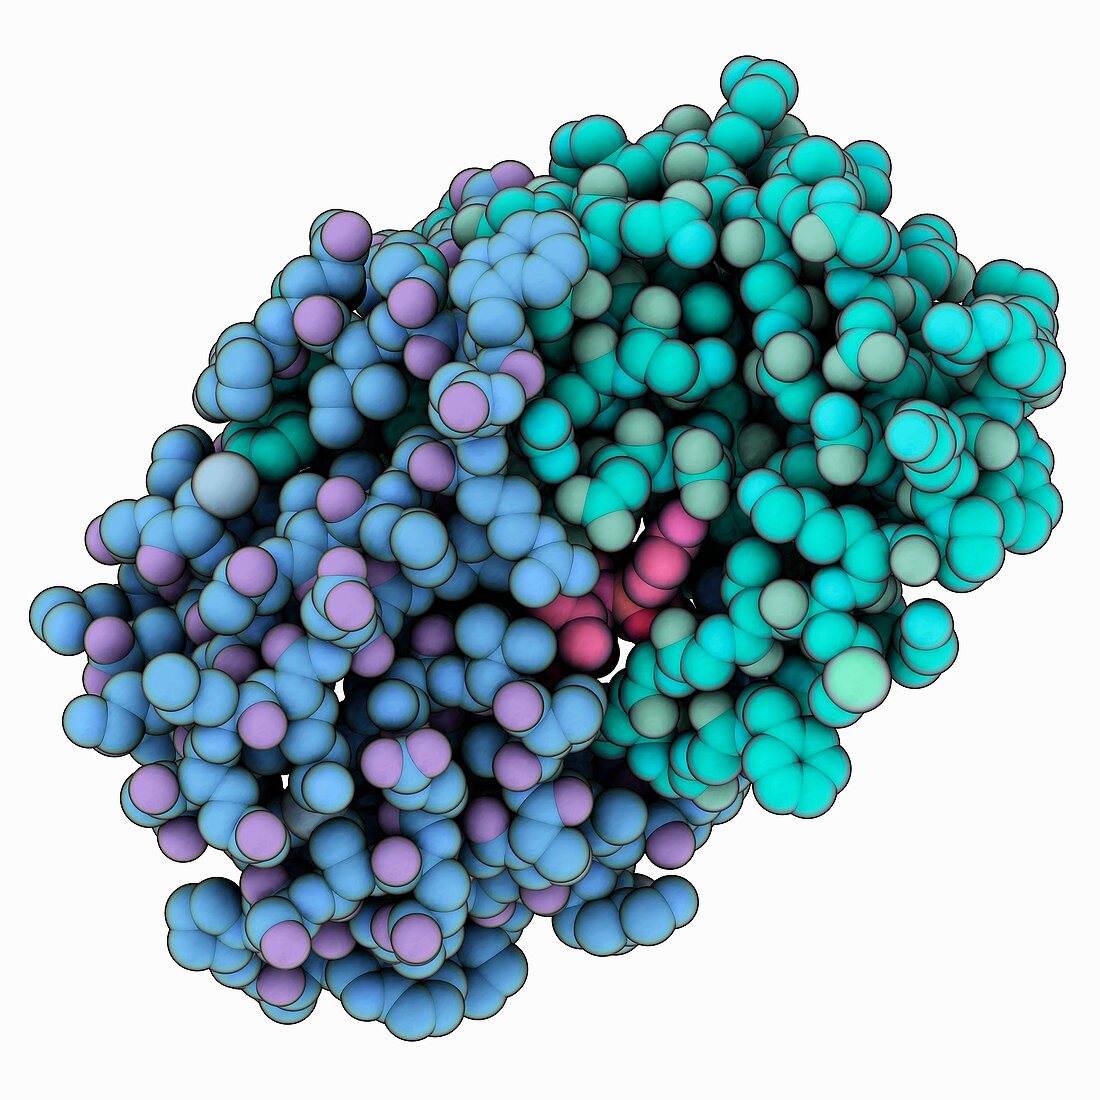 HIV-1 protease complex